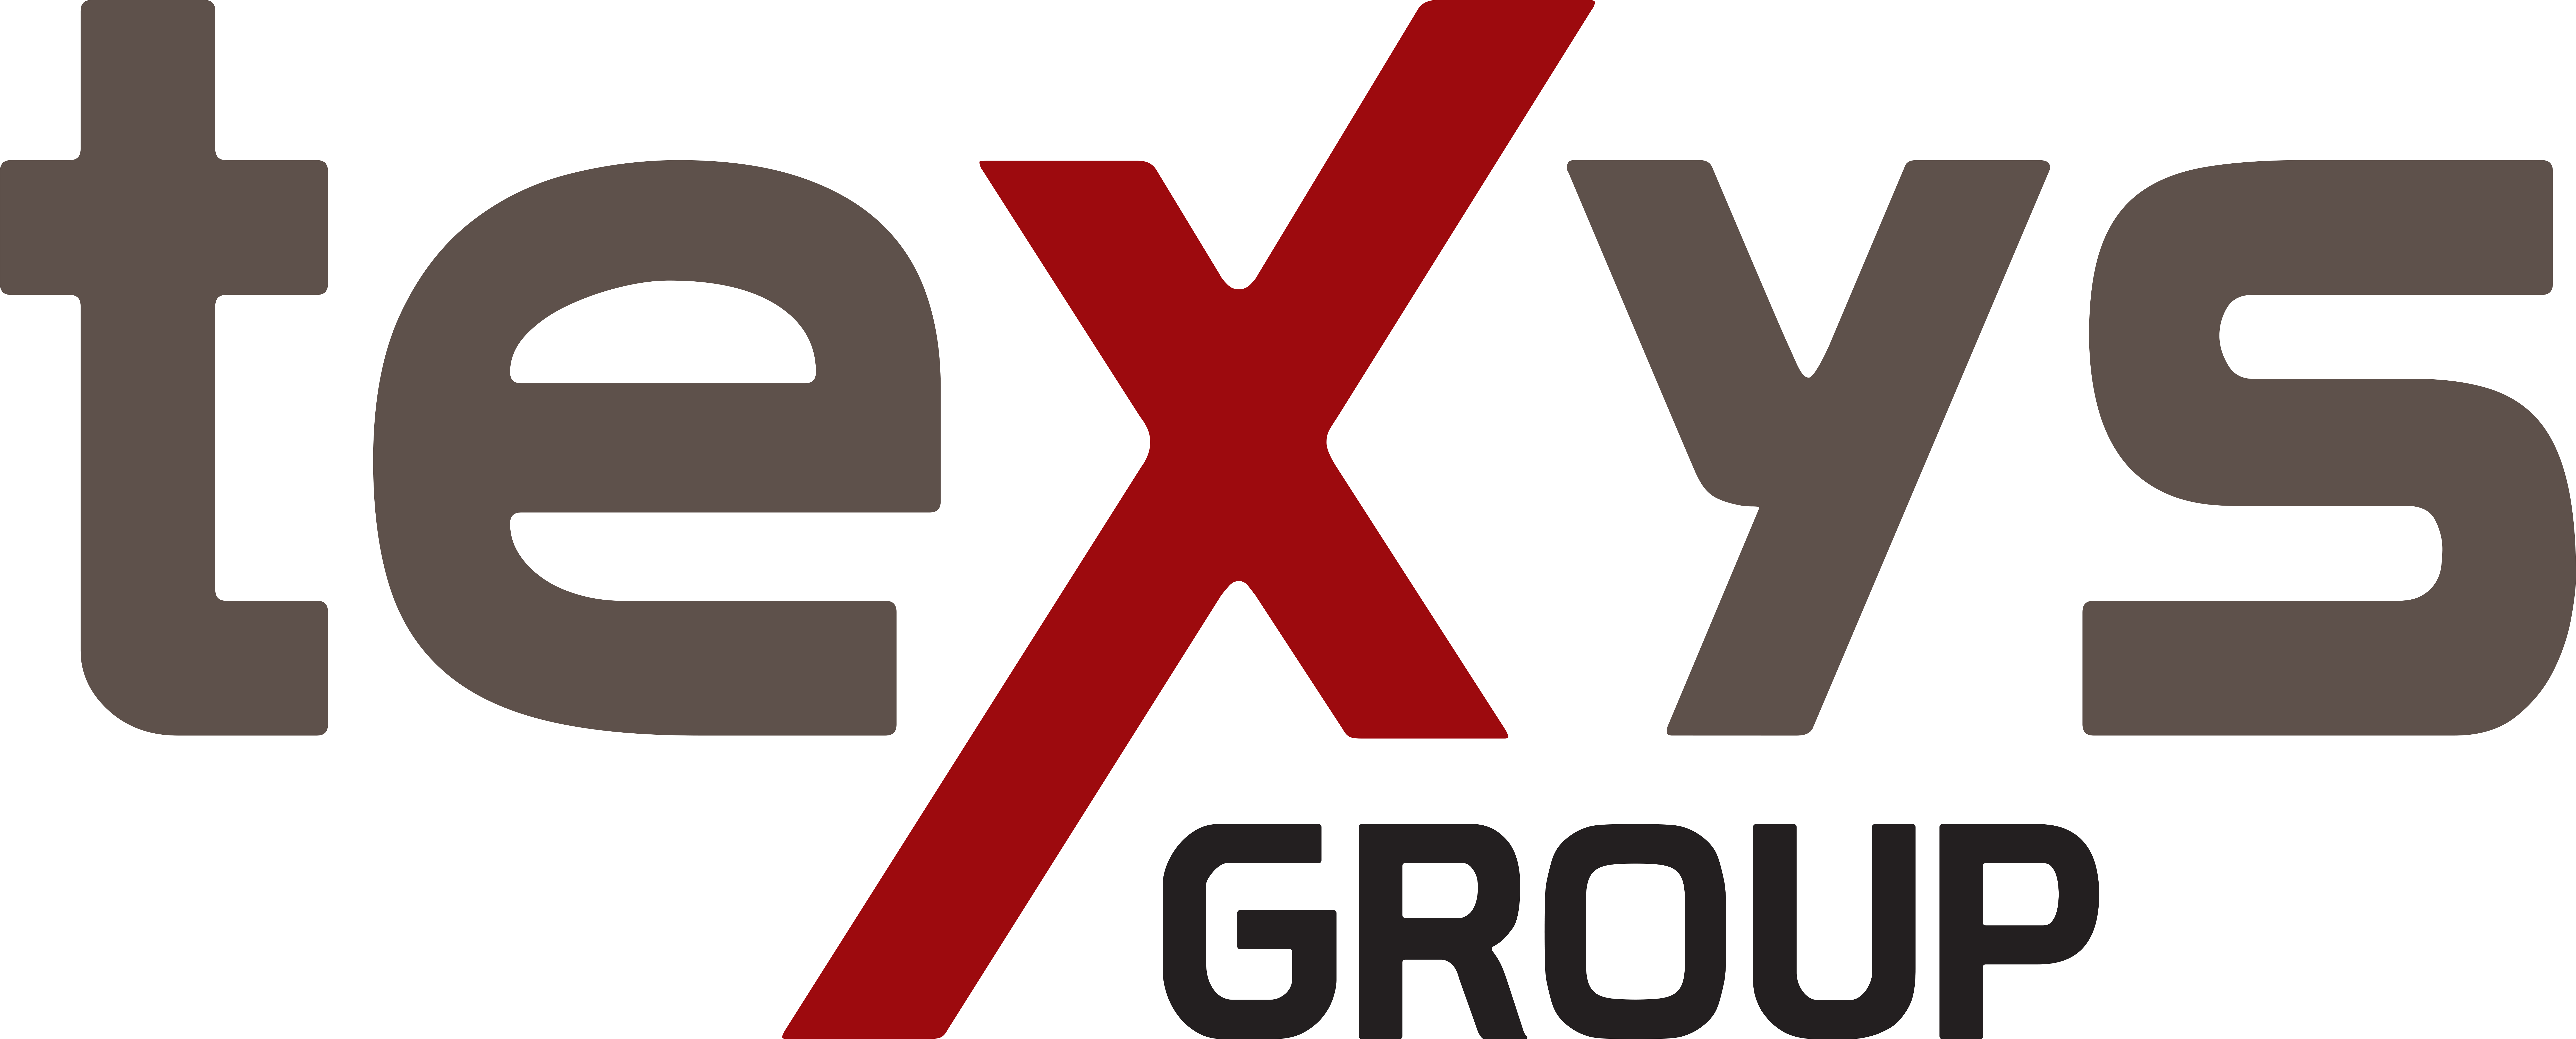 texys logo